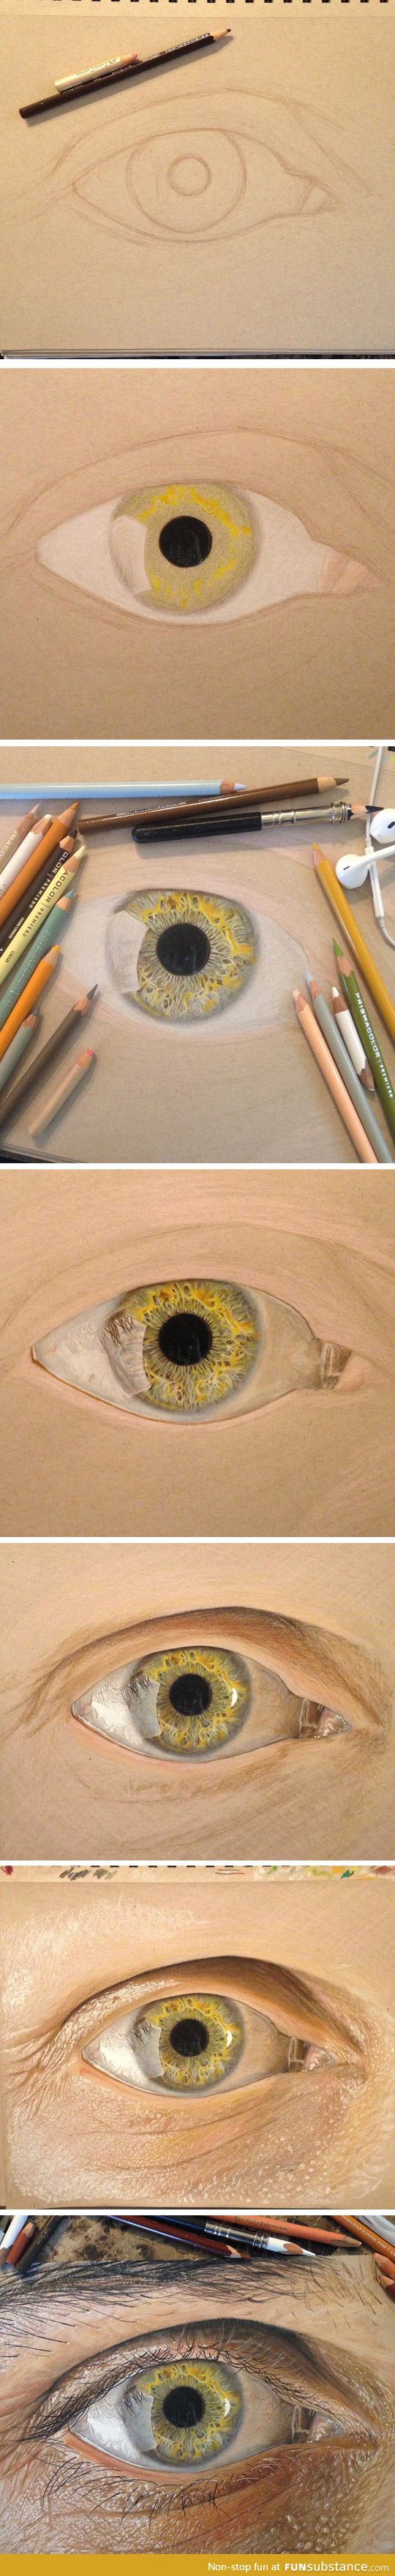 Not just an eye, hyperrealist eyes